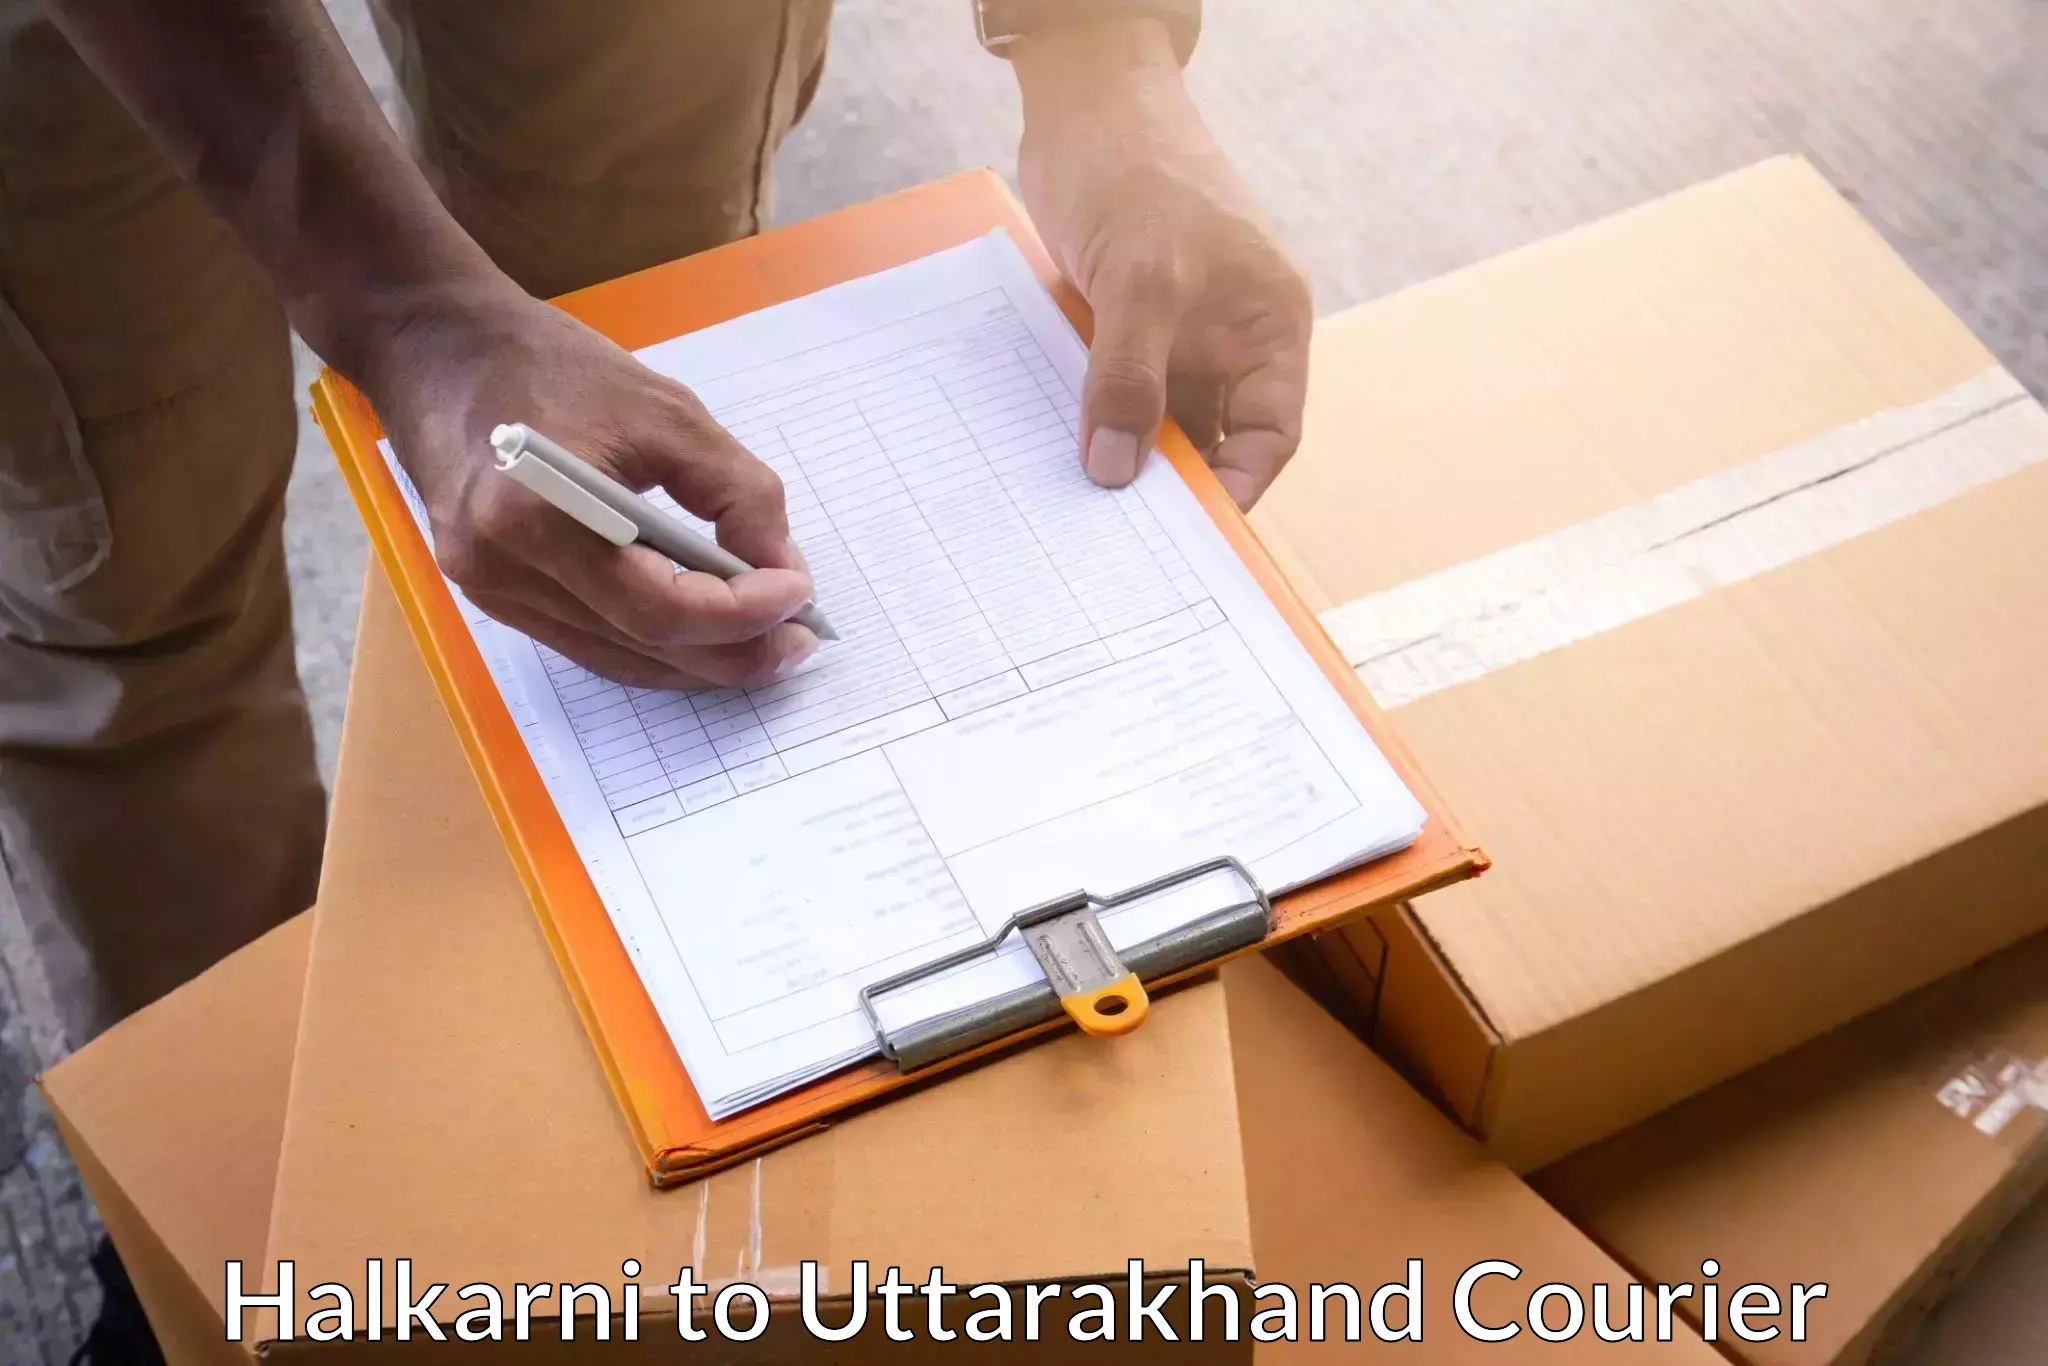 Express logistics providers in Halkarni to Haridwar